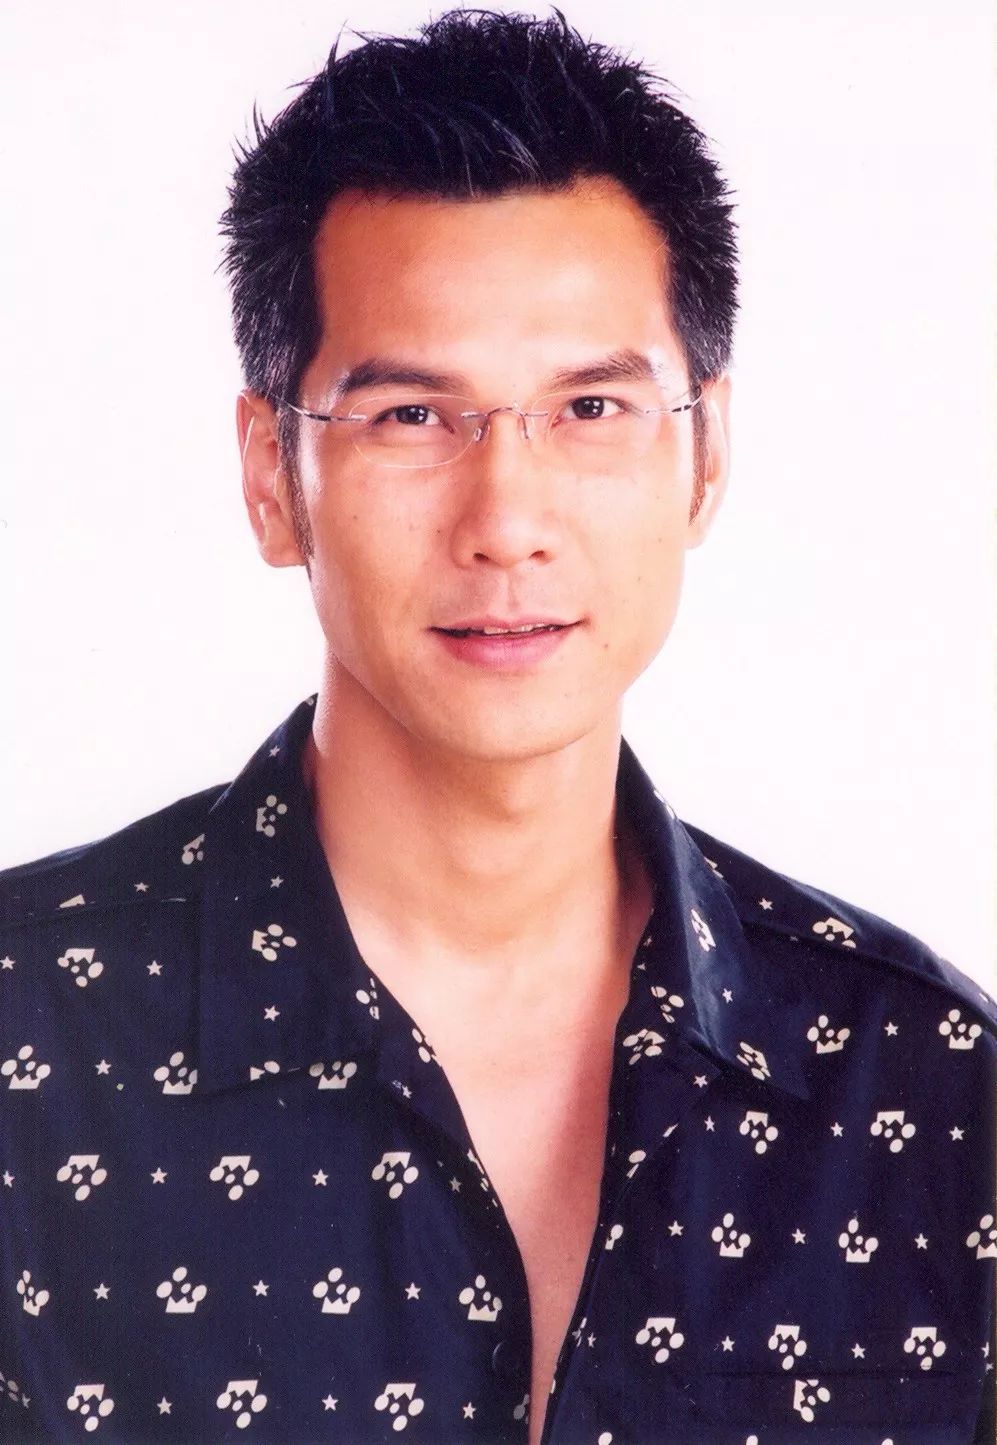 1990年,经过朋友介绍,陈启泰进入无线工作,先是以主持节目为主,第一个